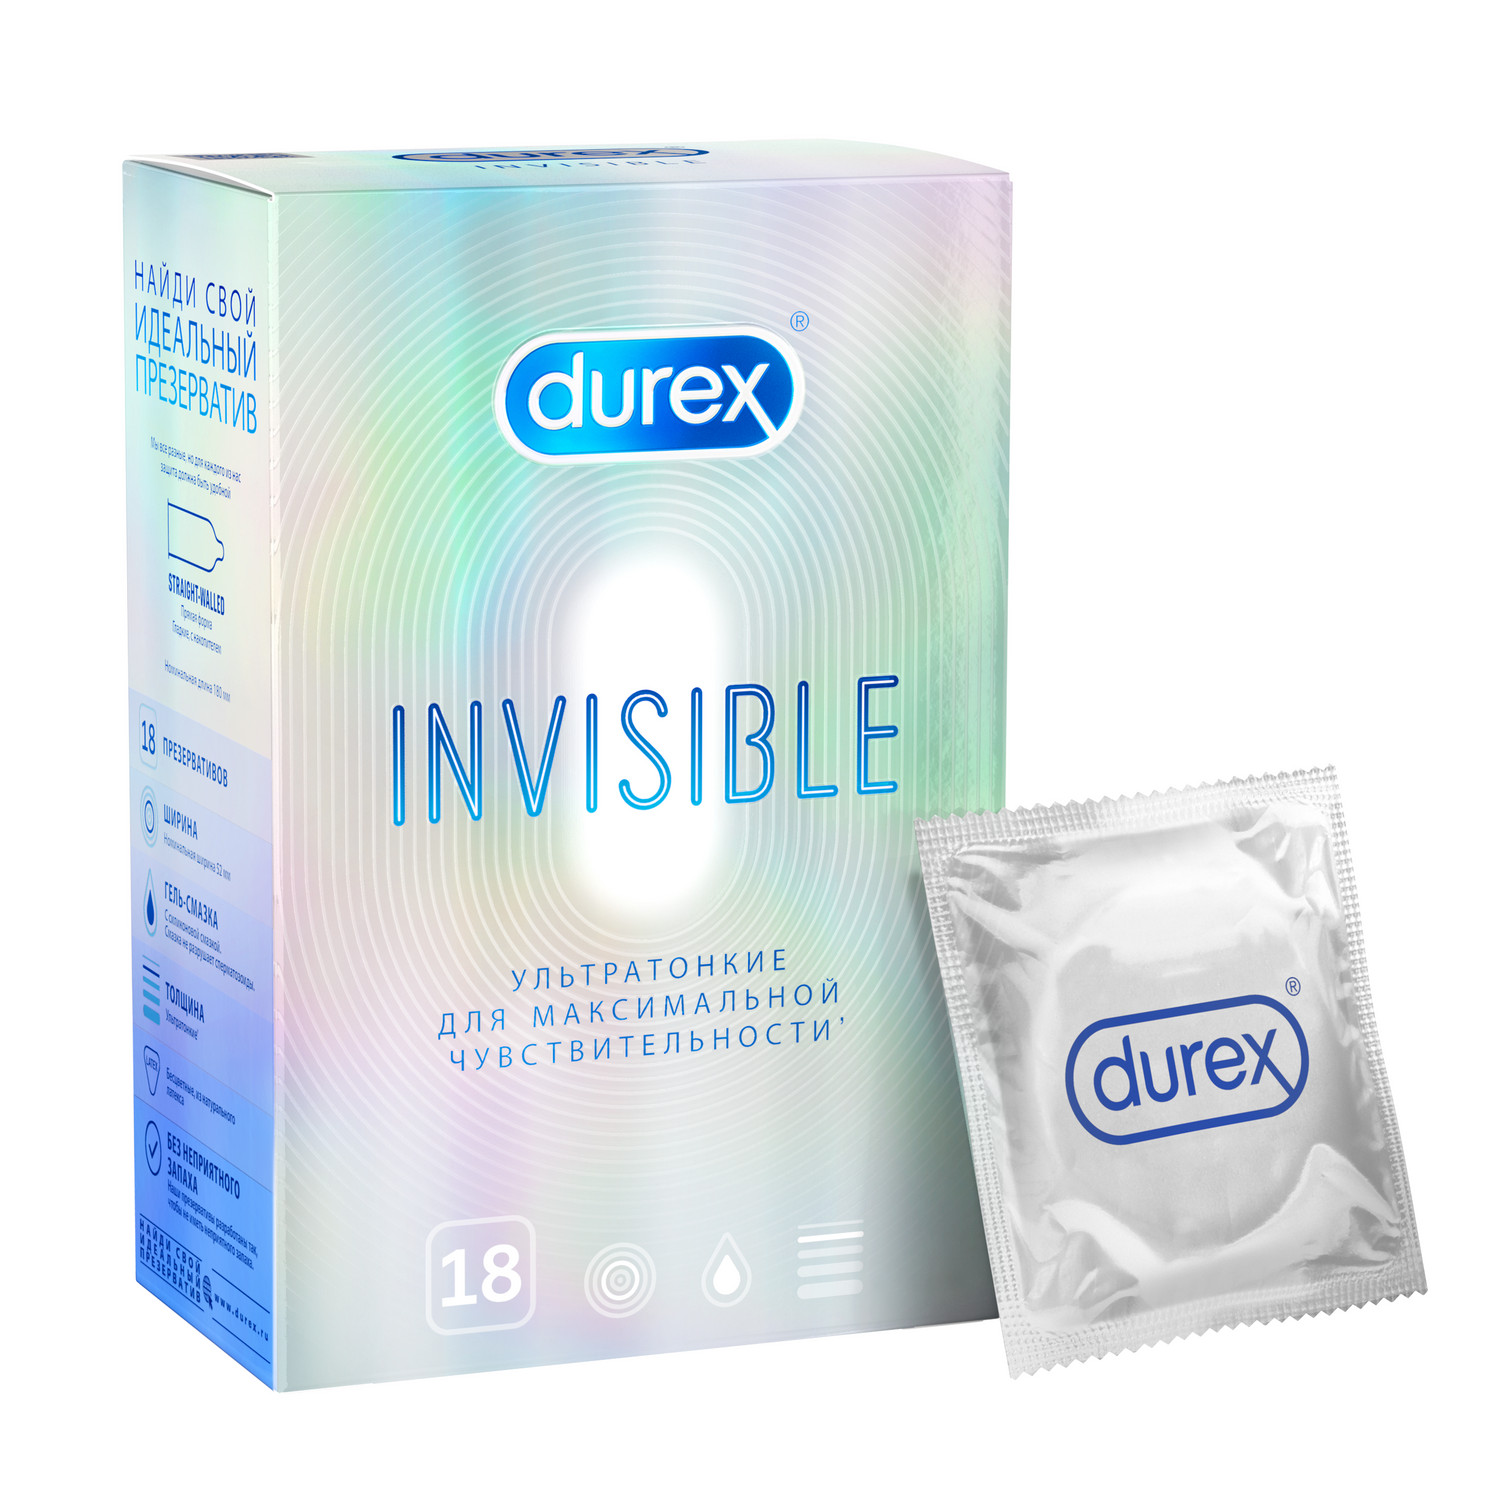 Купить Дюрекс презервативы Инвизибл ультратонкие №18, Рекитт-Бенкизер